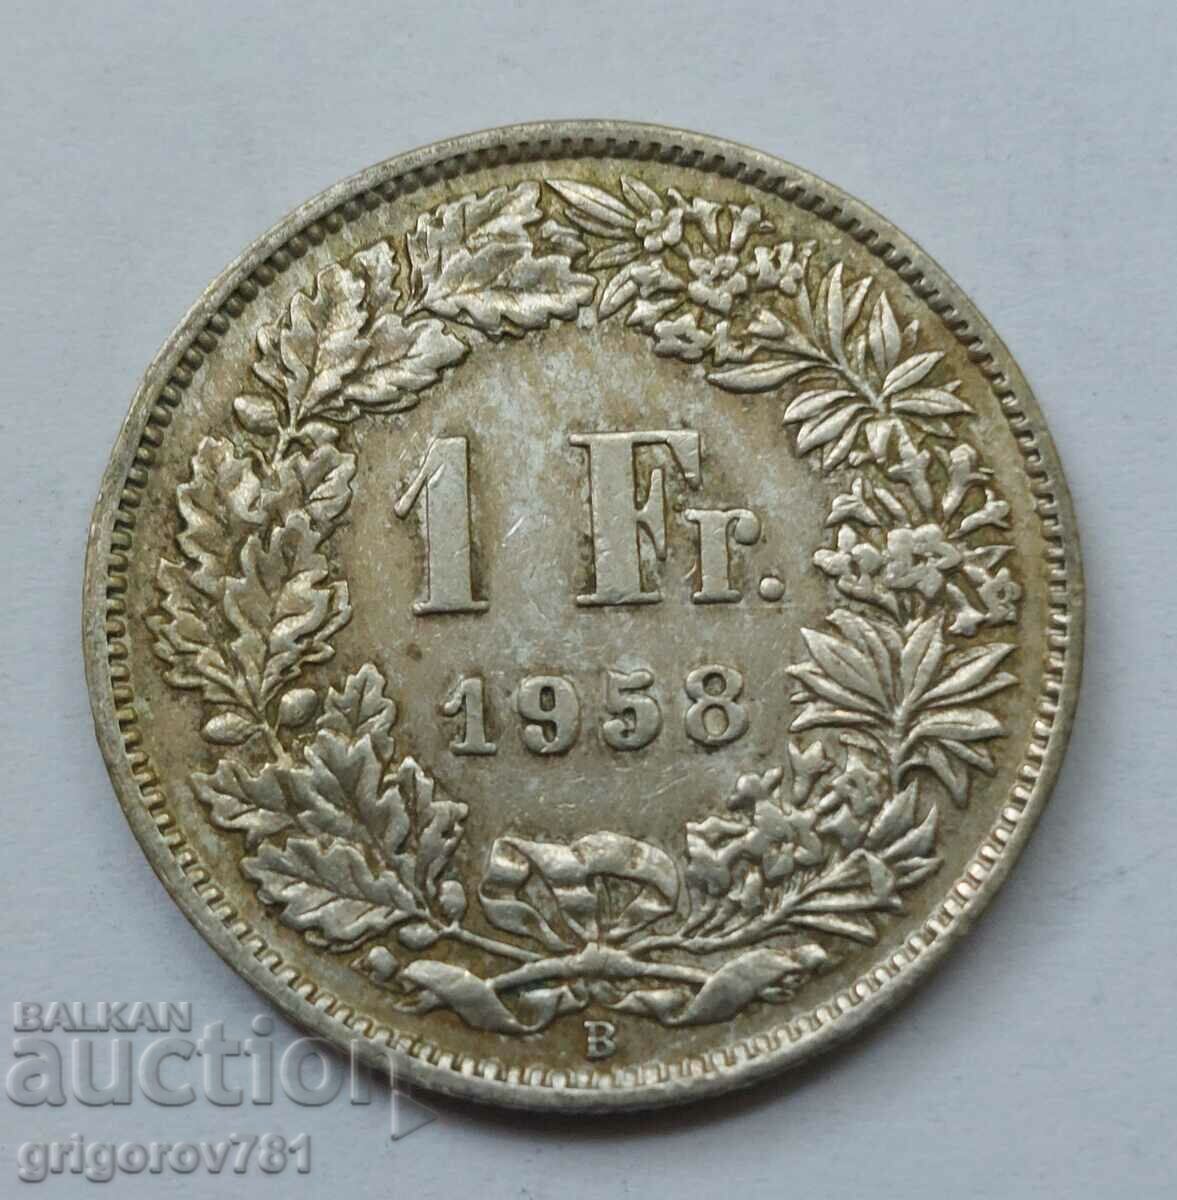 Ασημένιο 1 φράγκο Ελβετία 1958 B - Ασημένιο νόμισμα #29